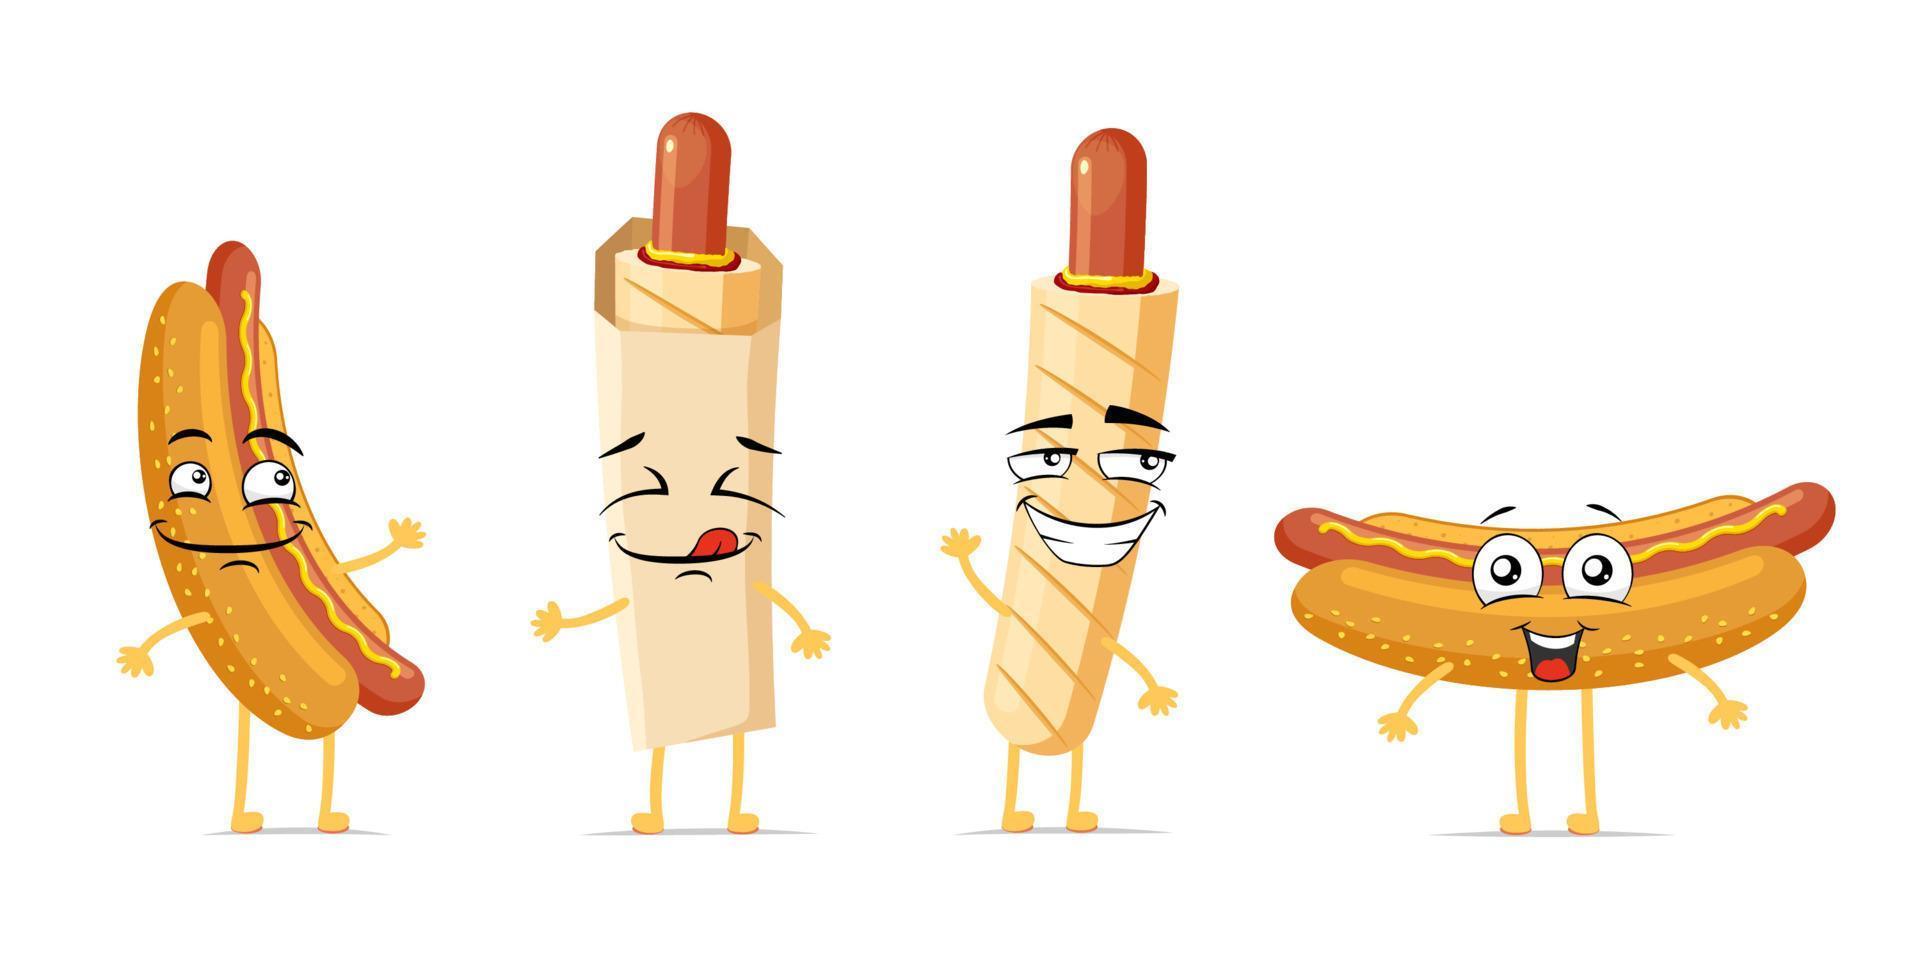 juego de personajes de dibujos animados sonrientes divertidos de hot dog. Salchicha francesa cocida en bollo linda colección de mascotas con expresión de cara feliz. diferentes comida rápida alegres emoticonos cómicos vector eps ilustración